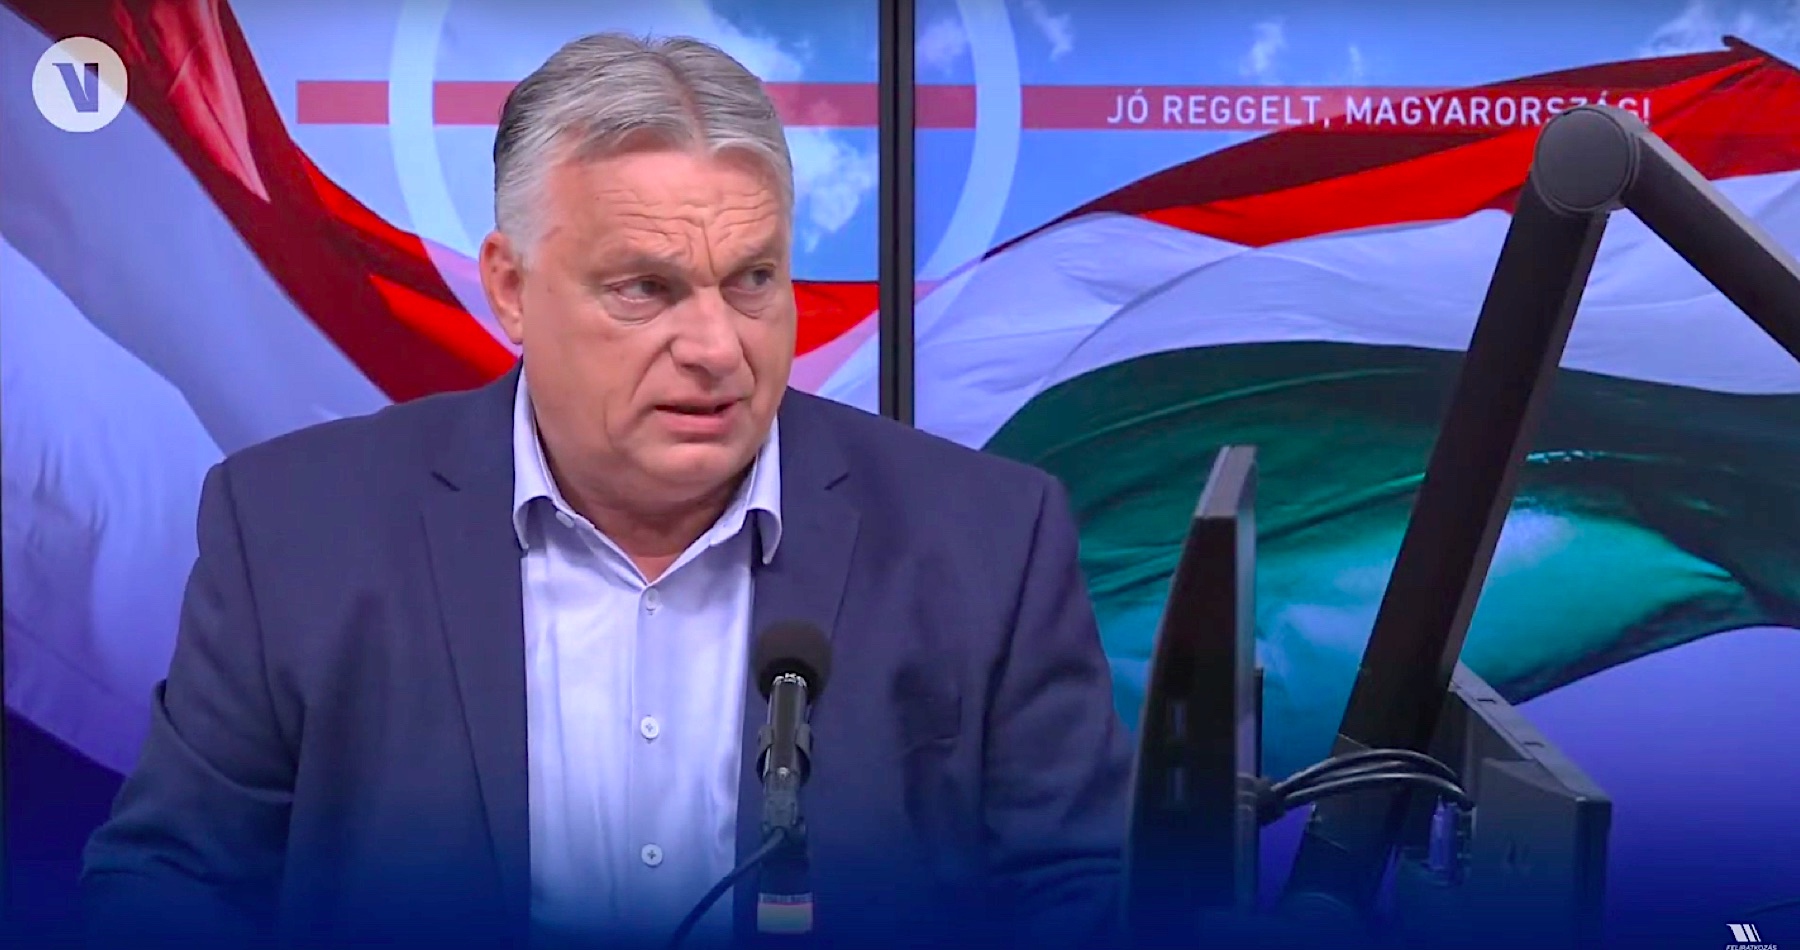 VIDEO: Maďarský premiér Viktor Orbán varuje, že v Európe sa citeľne komunikuje príprava na vojnu proti Rusku, ktorá je podobná burcovaniu, aké tu bolo pred 1. a 2. svetovou vojnou. Český europoslanec a psychiater Ivan David vo svojom videu poukazuje na protiruskú hystériu korporátnych médií manipulujúcich verejnosť a tvrdí, že „údajné oznámenie neznámych tajných služieb, na ktoré sa tieto médiá odvolávajú, je inzerát na útok, ktorý niekto pripravuje a mediálna príprava na provokáciu k rozšíreniu vojny na Ukrajine“